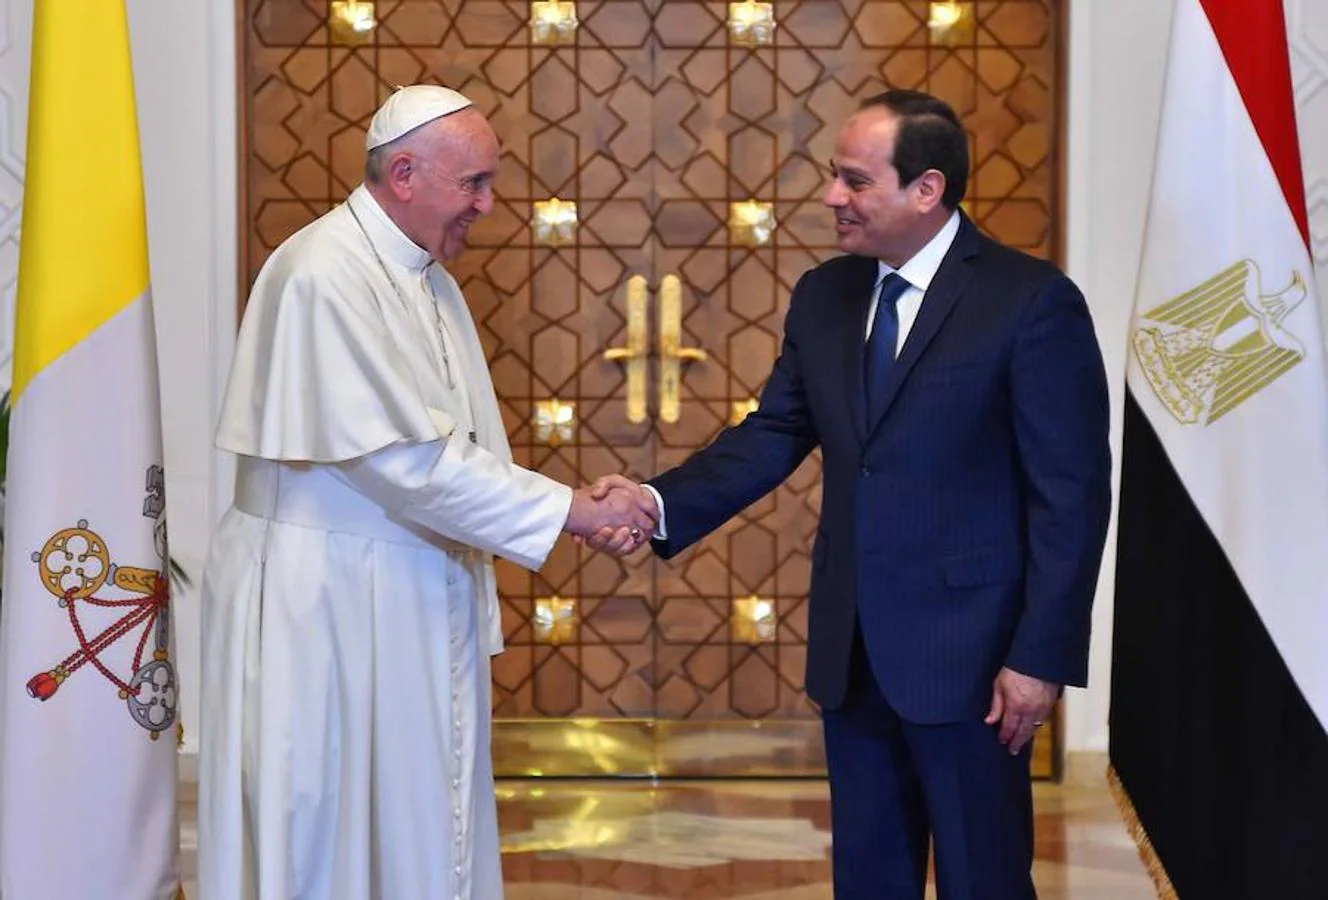 Imagen donde se observa al Papa Francisco junto al presidente egipcio Abdel Fattah al-Sisi en el palacio presidencial de El Cairo